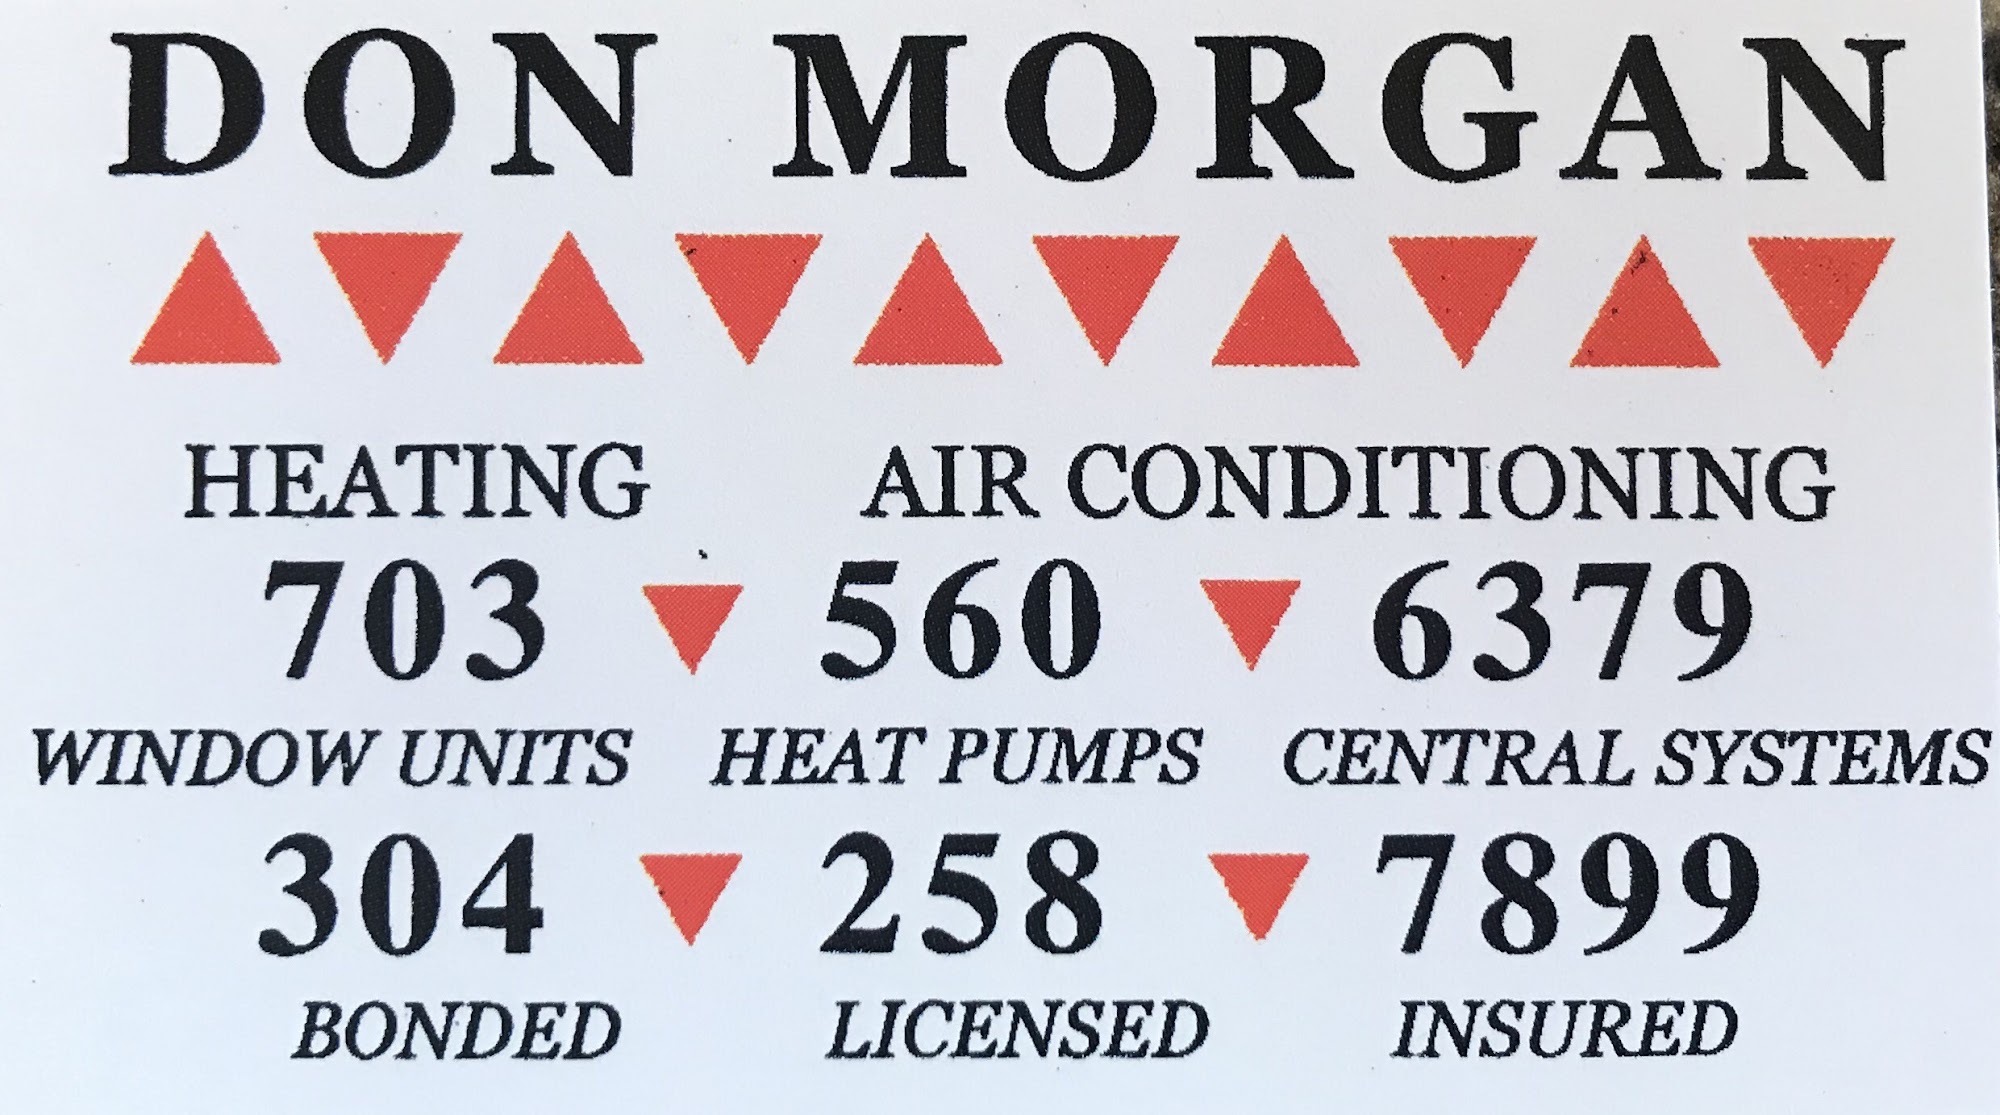 Don Morgan Heating & Air conditioning